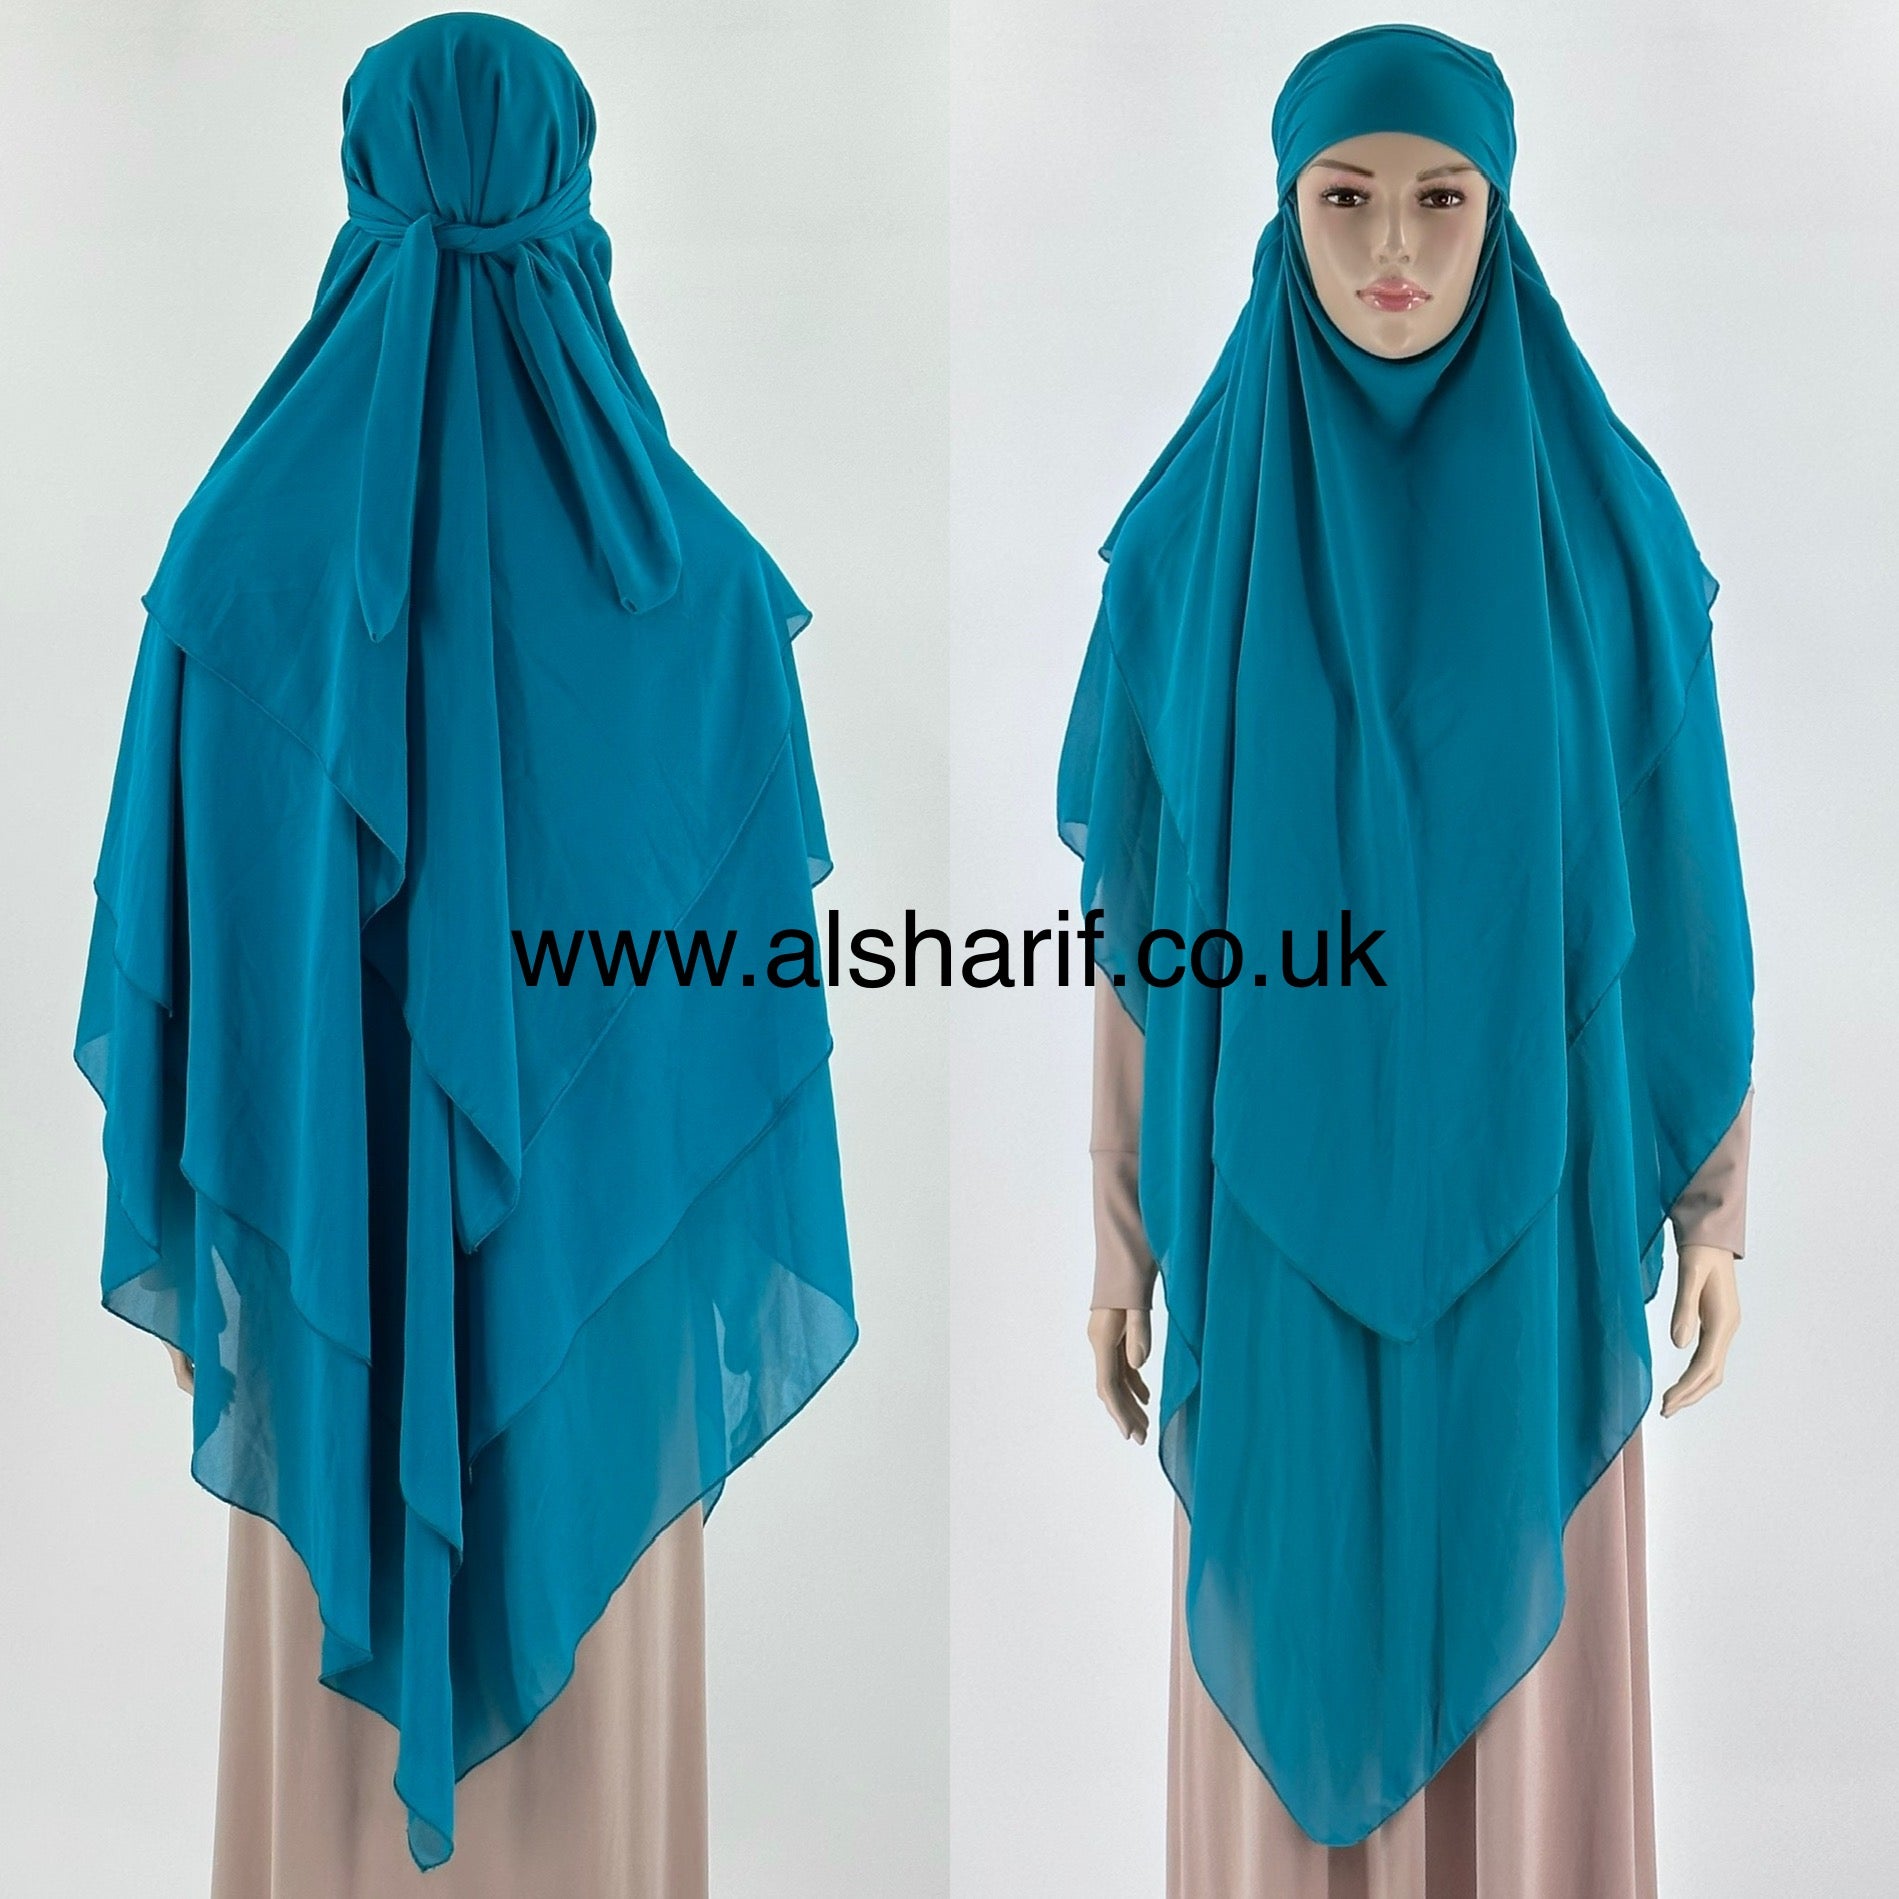 3 Layer Triangular Chiffon Khimar Hijab - KC4